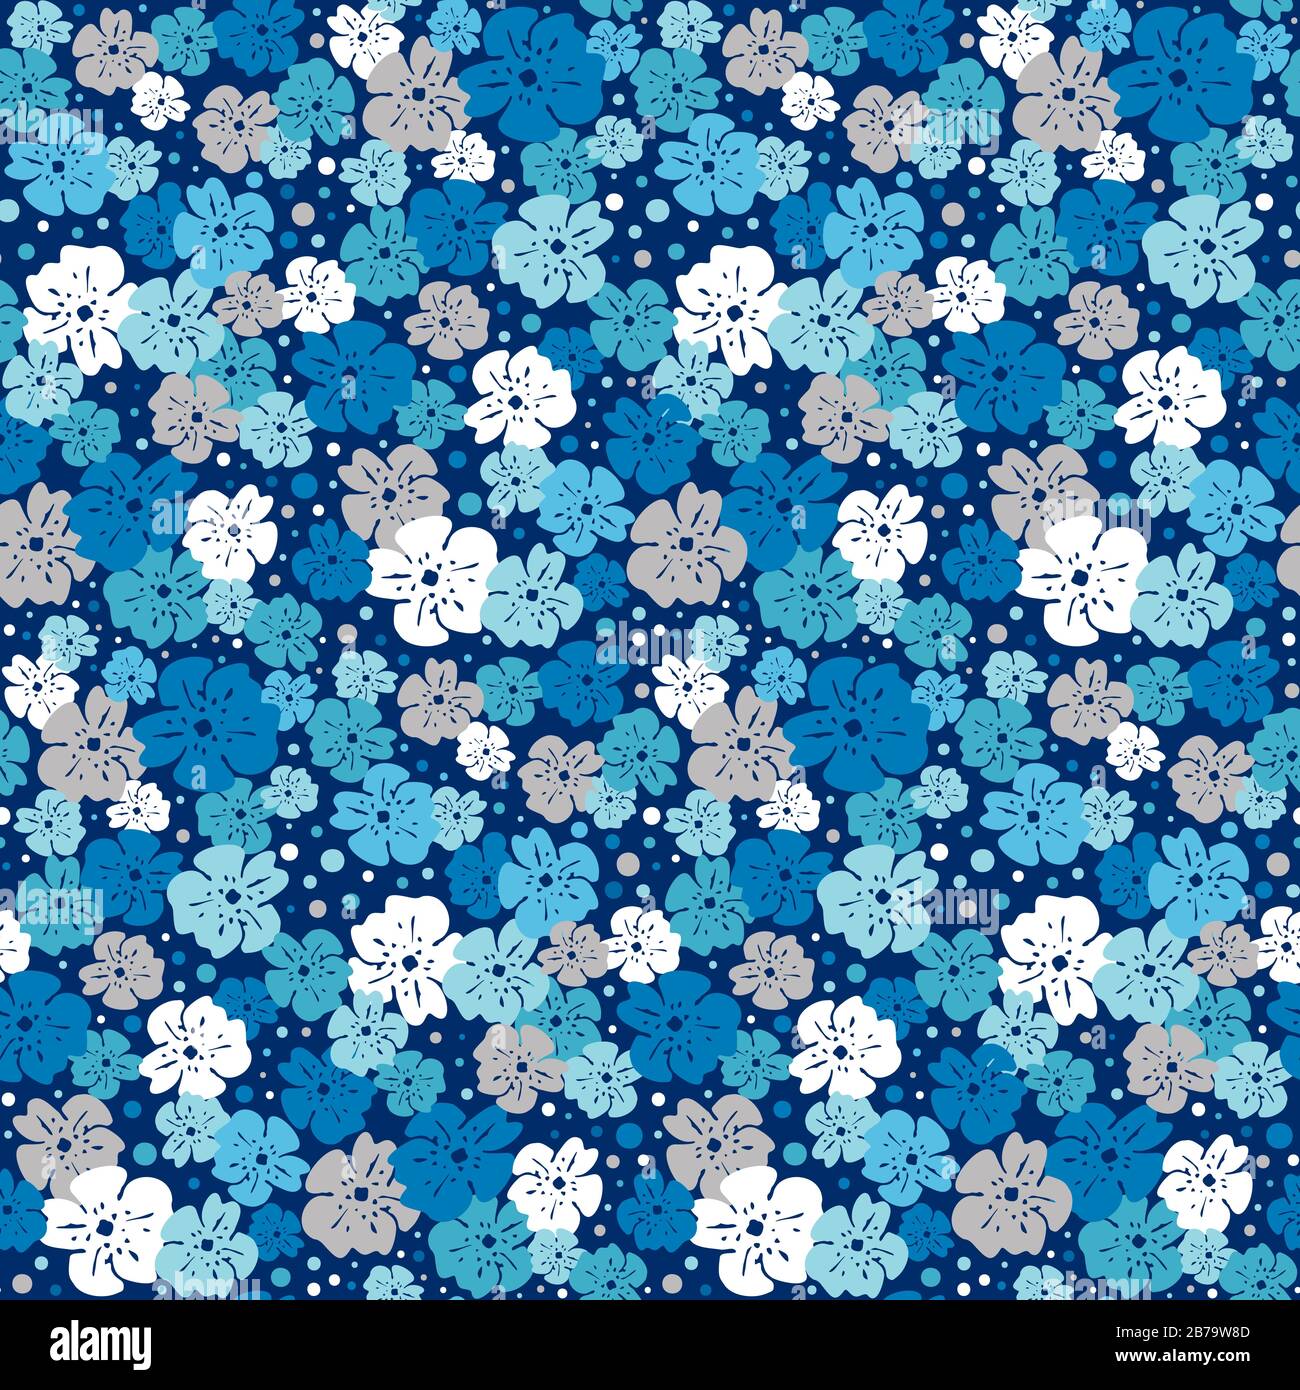 Blaue, weiße und silbergraue Blumen mit Punkten in verschiedenen Größen, die auf einem marineblauen Hintergrundevektor verstreut sind, nahtloses Repetiermuster und Hintergrund, eps. Stock Vektor